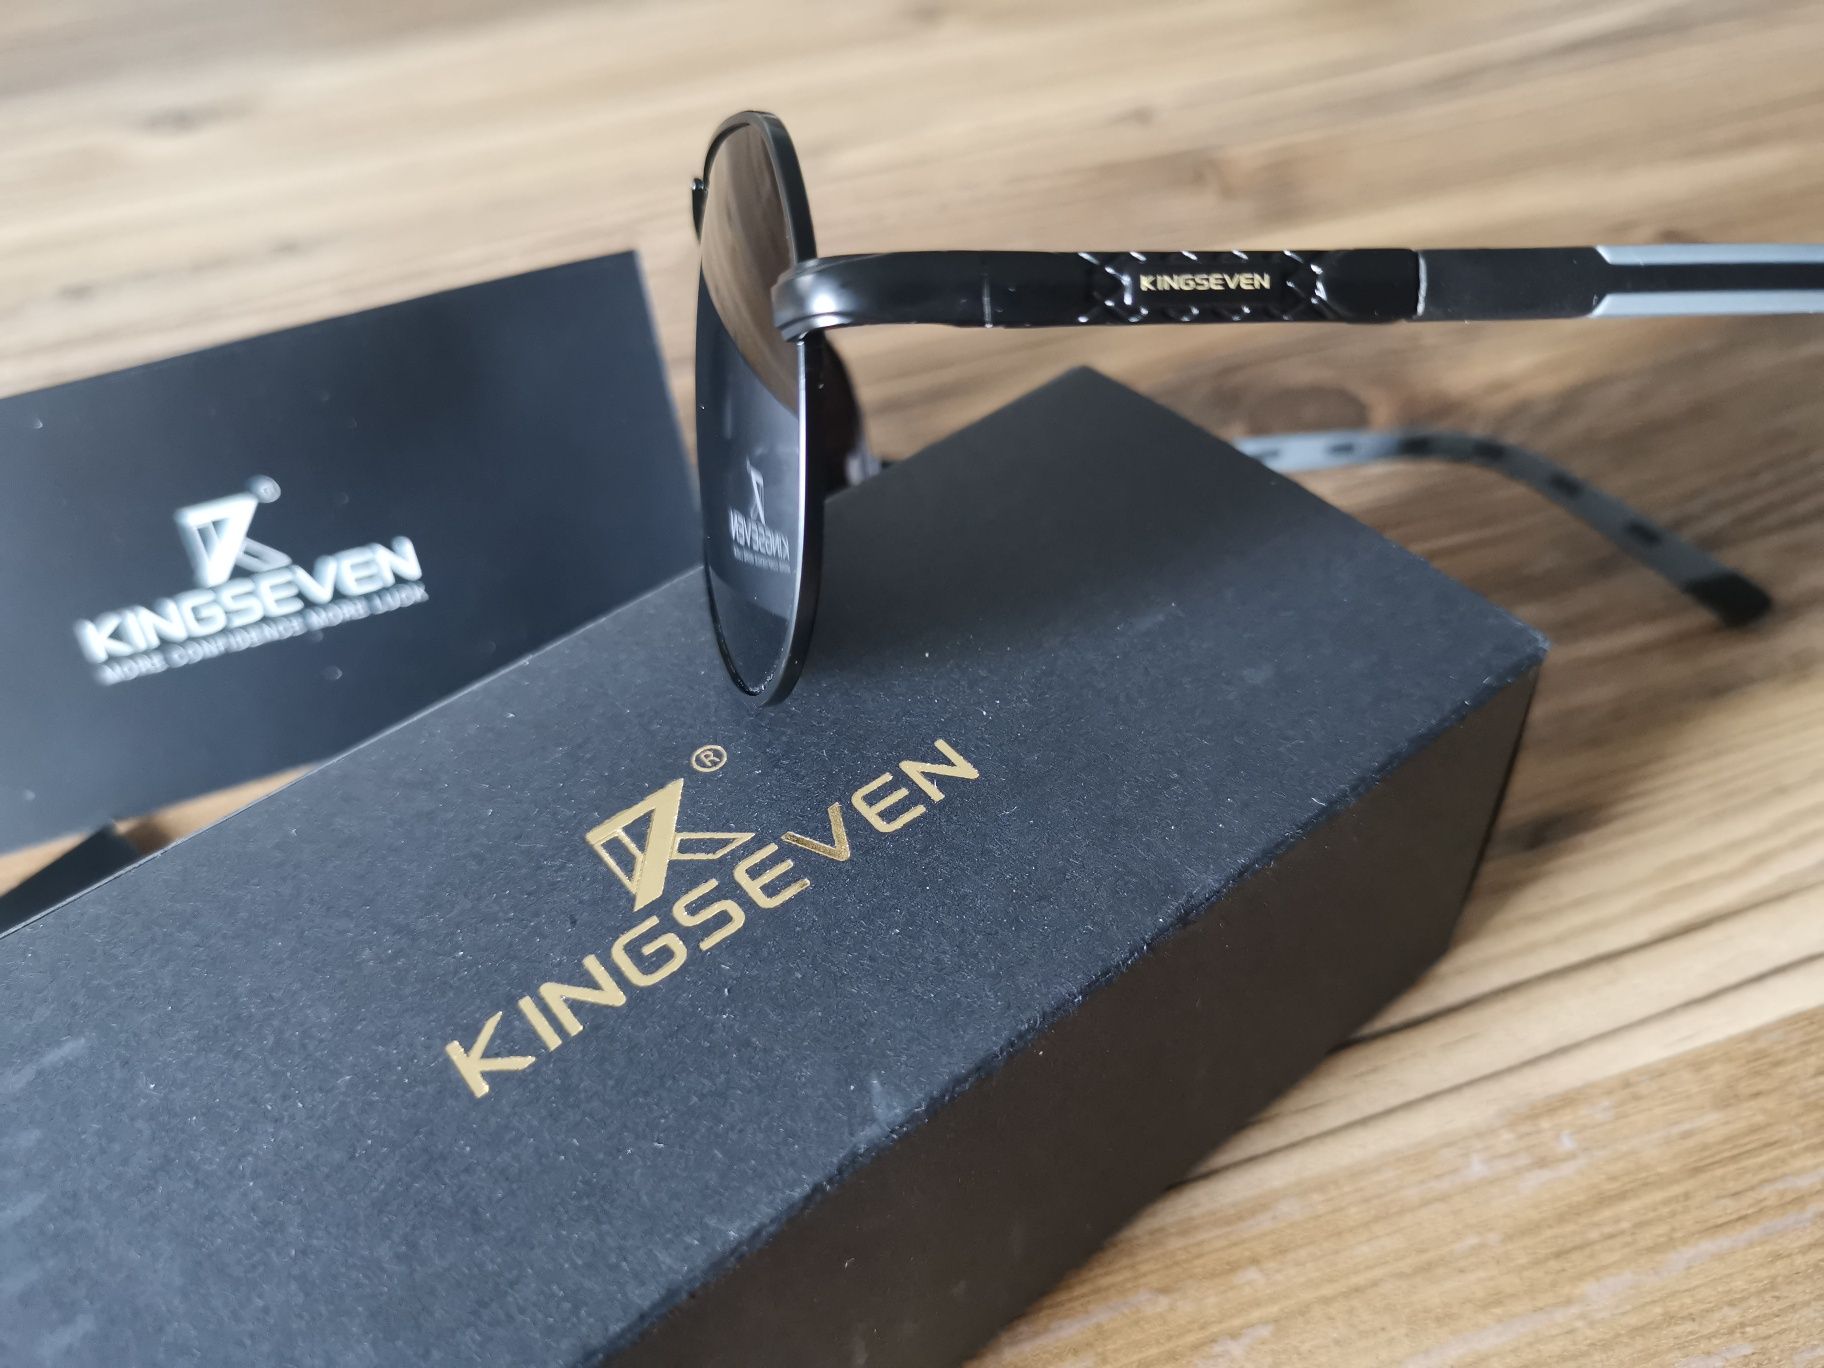 Okulary Przeciwsłoneczne Kingseven Aviator Black Glass